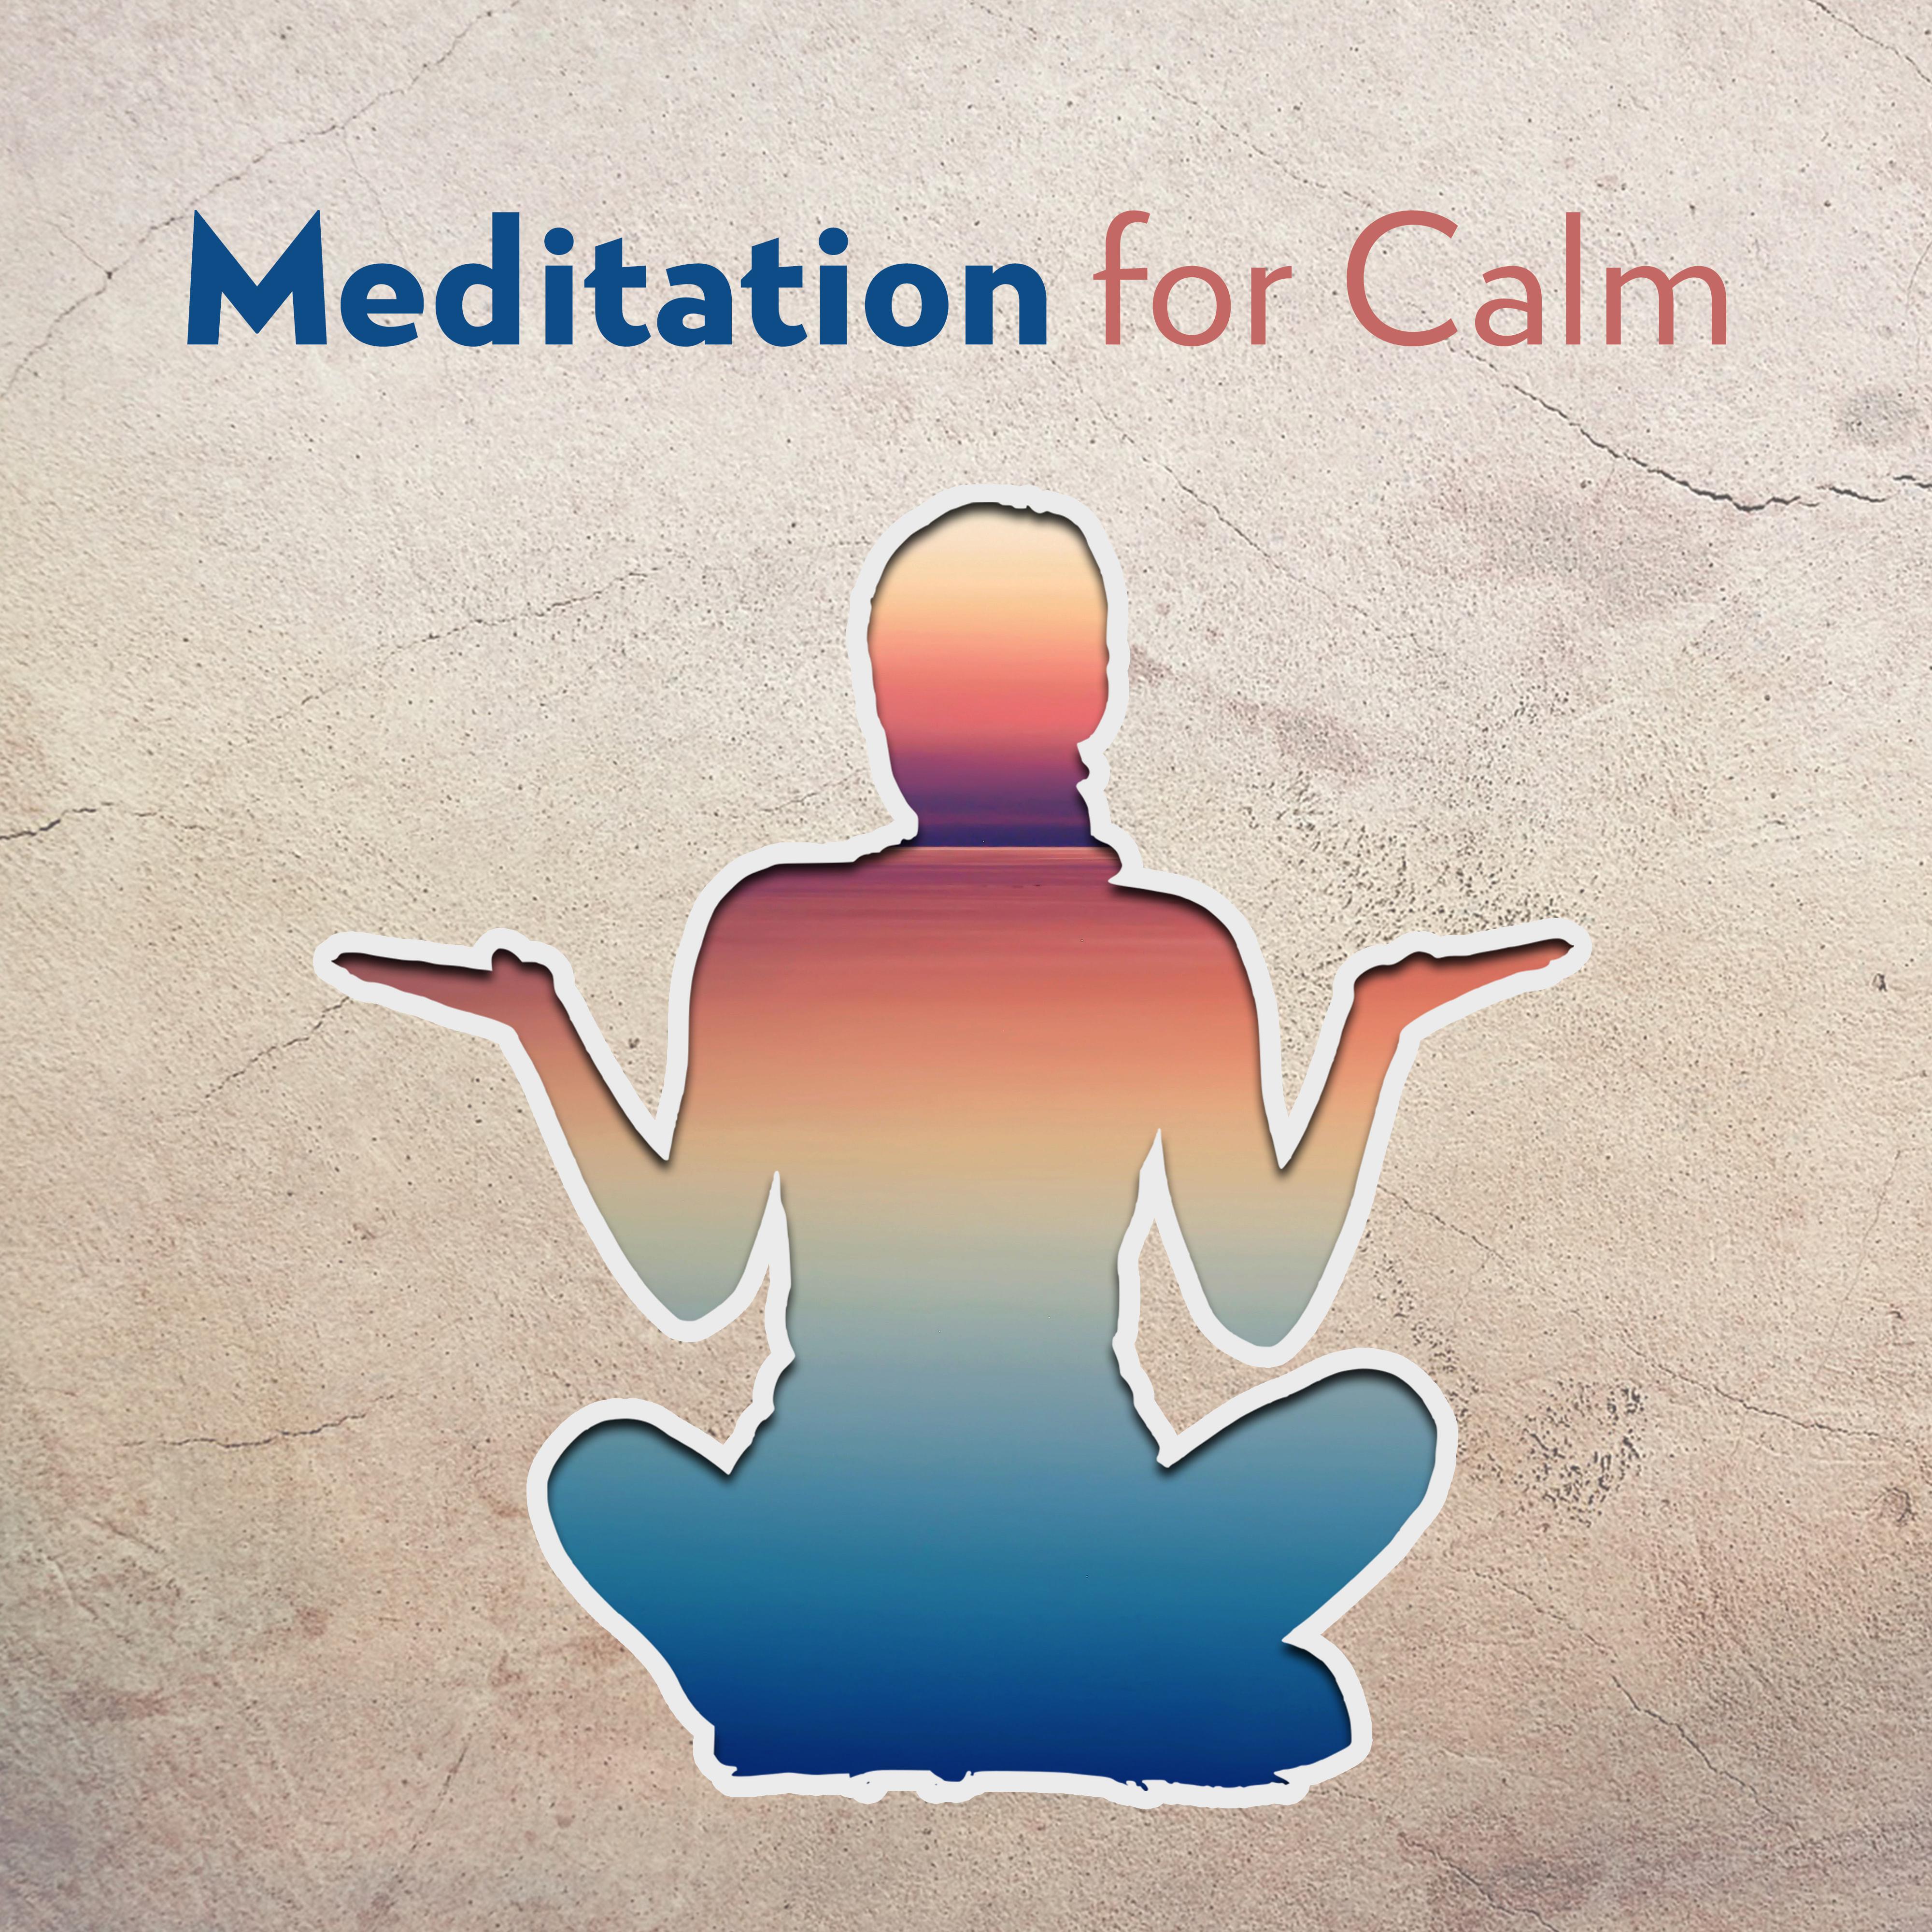 Meditation for Calm